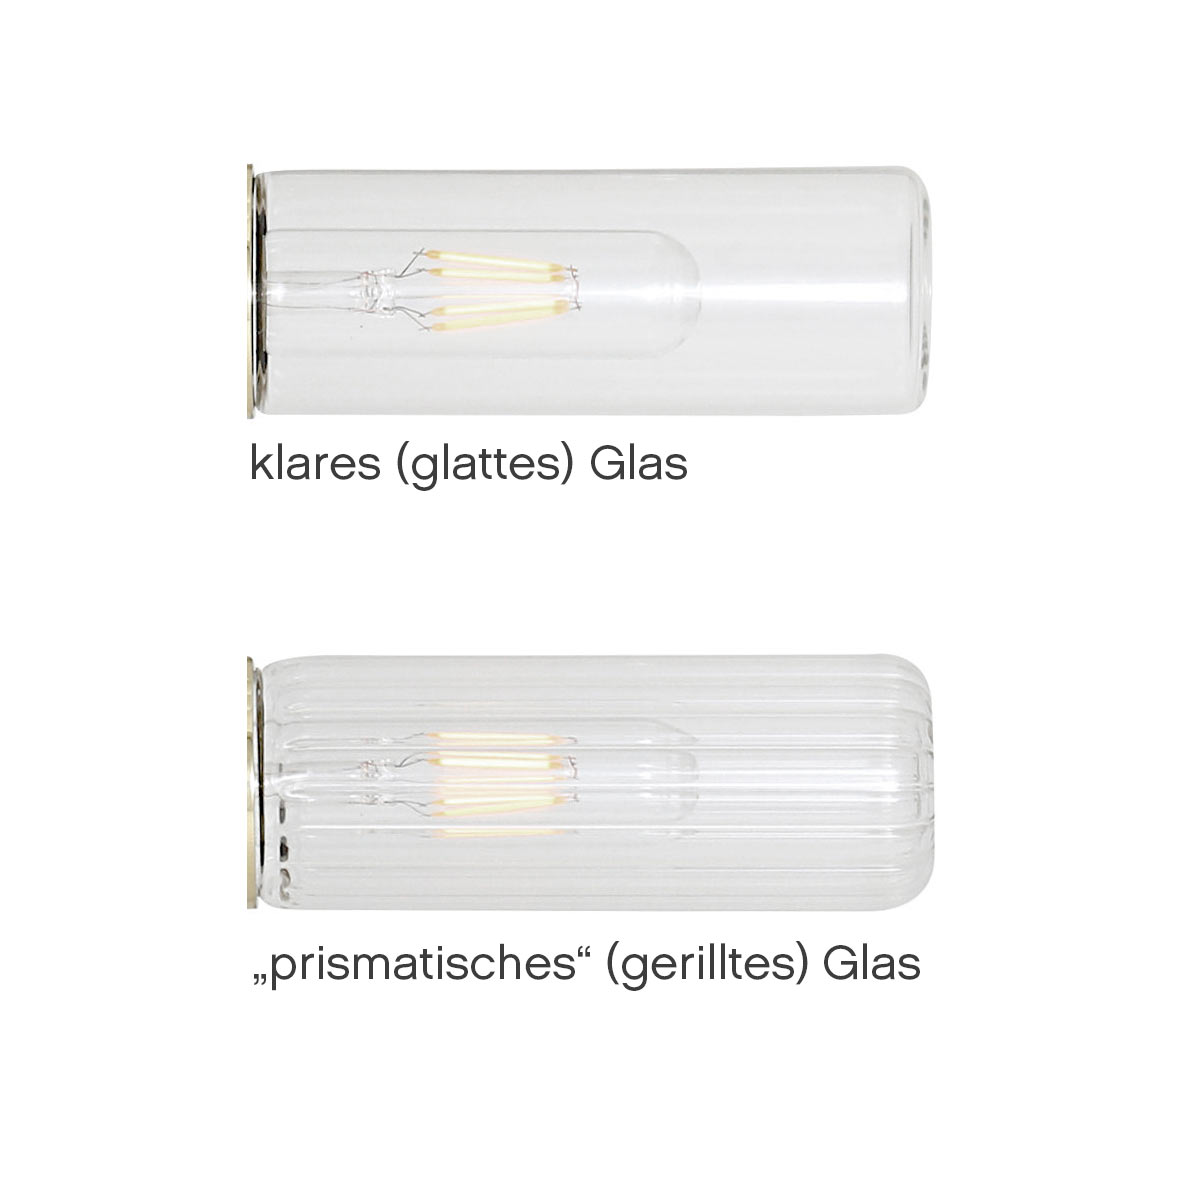 Spiegel-Wandlampe mit zwei Glaskolben (klar oder prismatisch), IP65, Bild 3